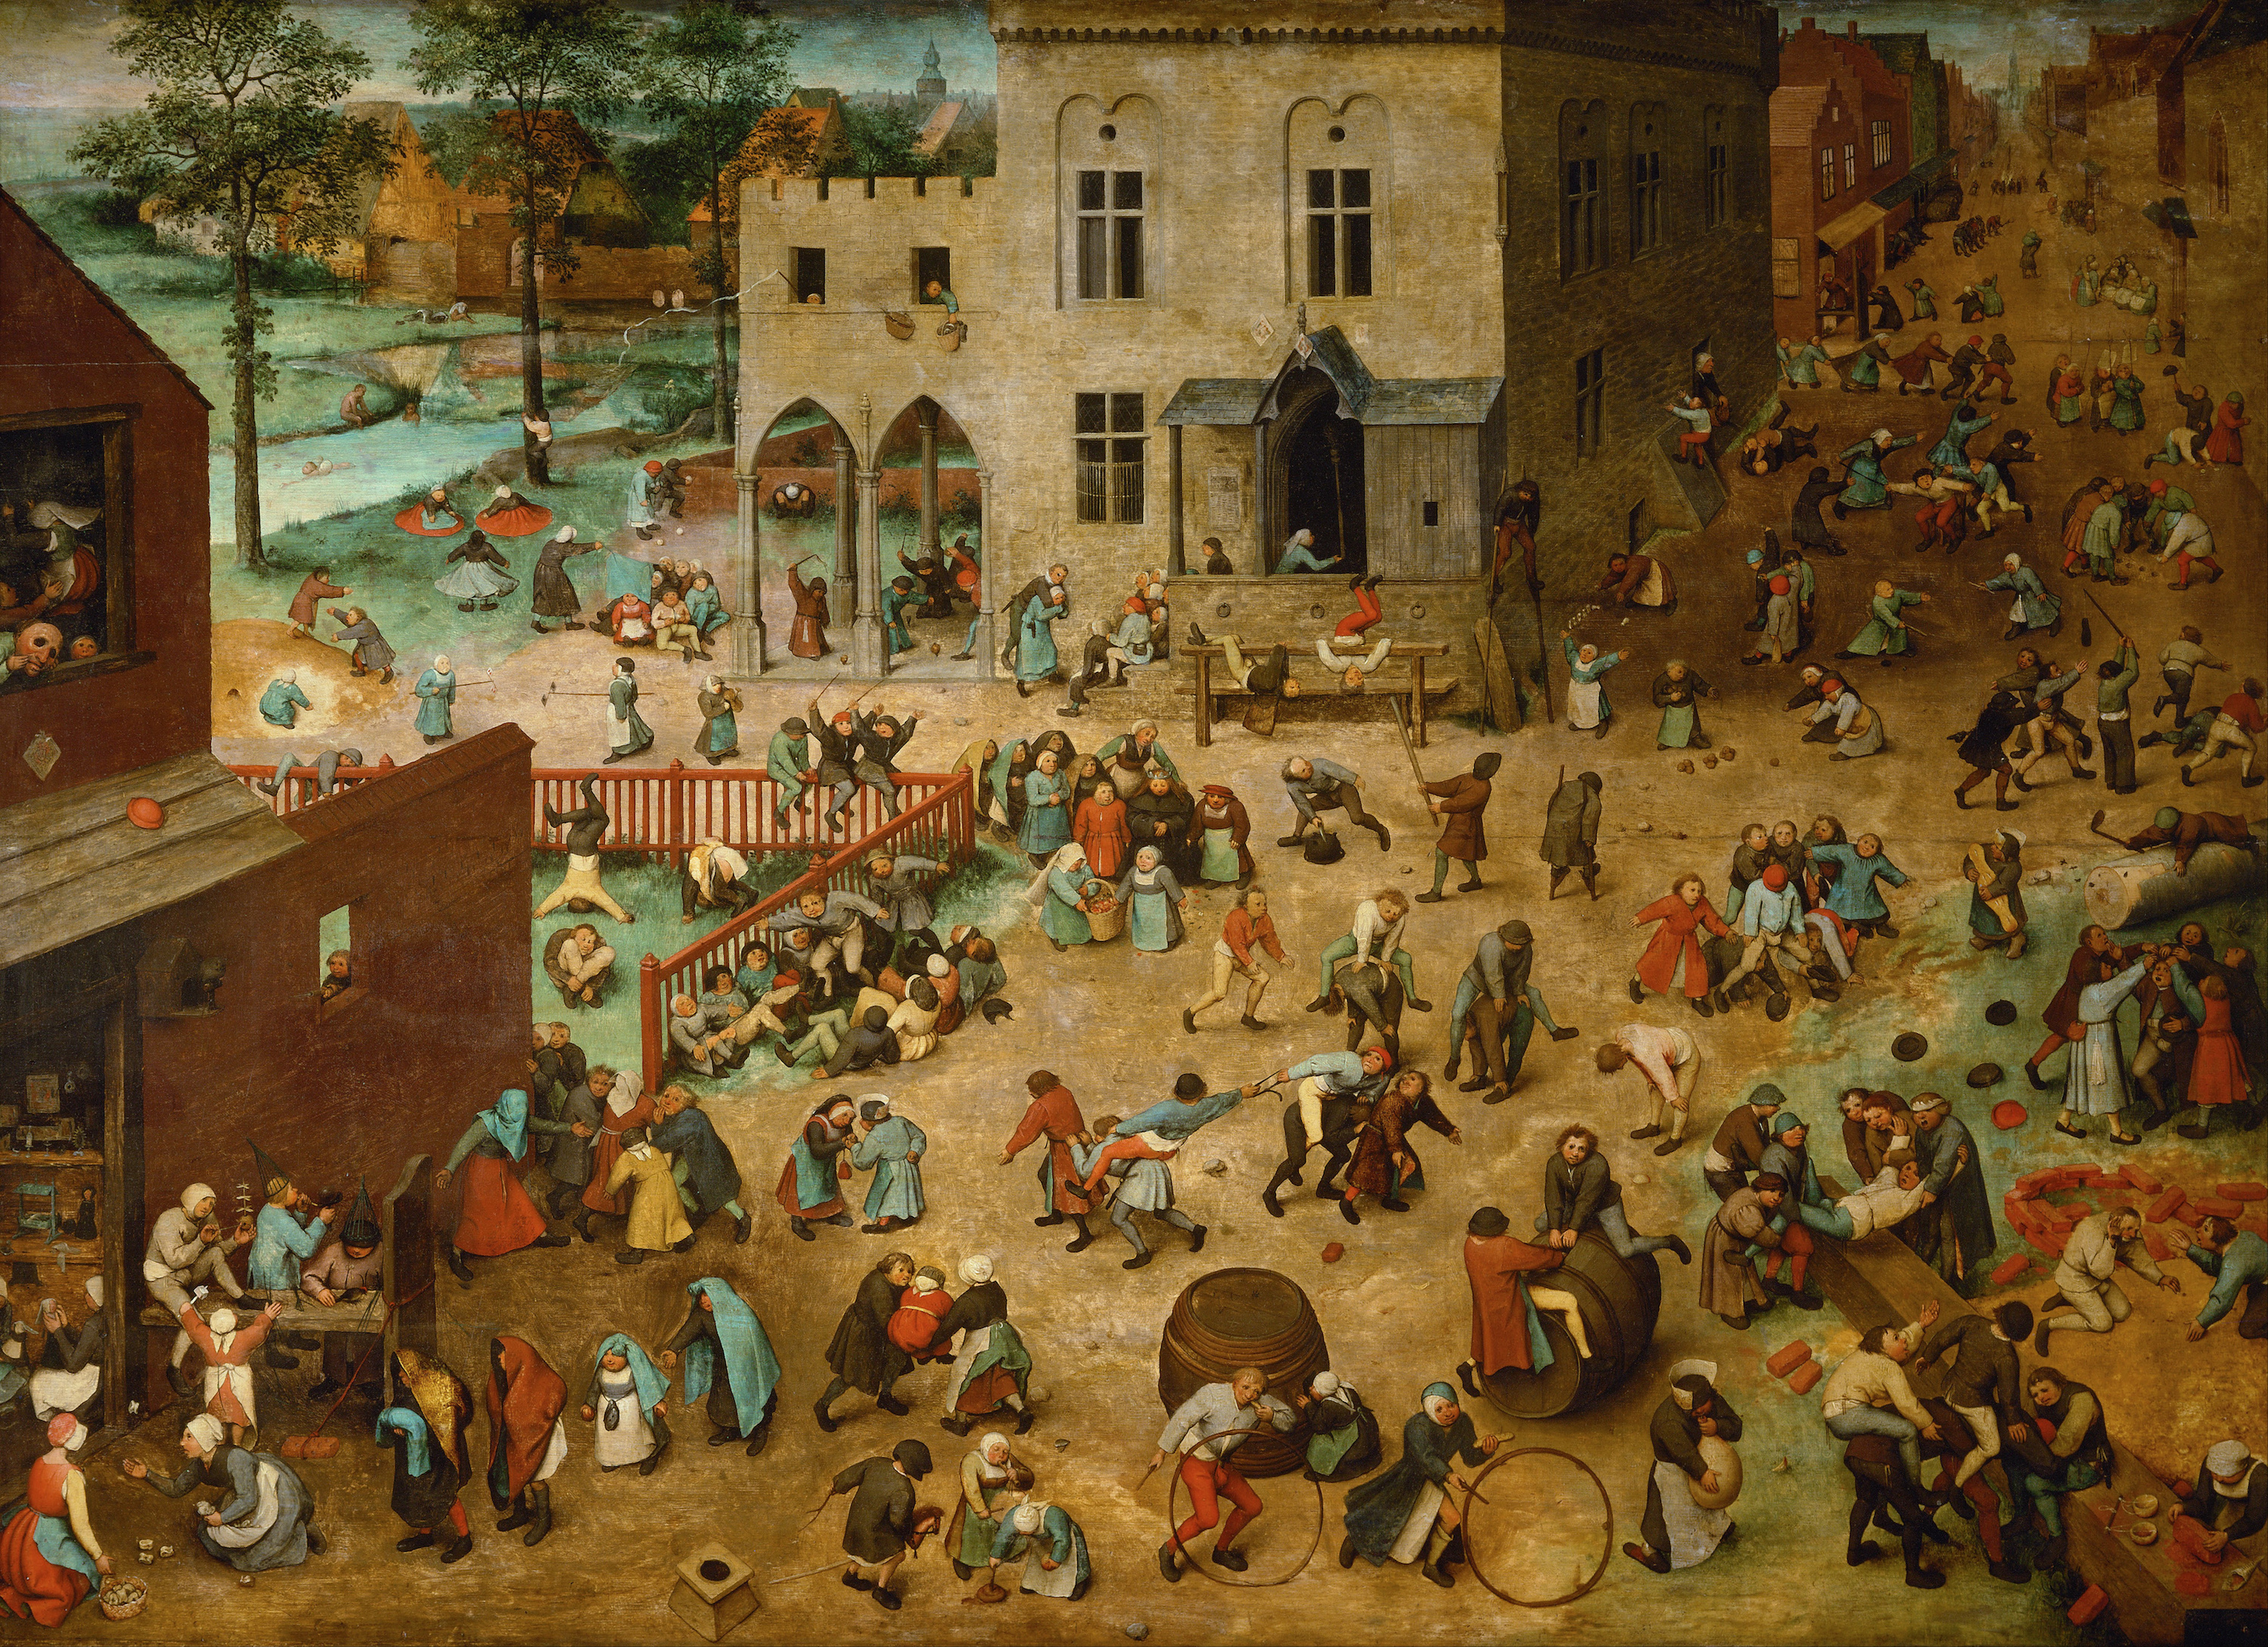 孩子們的遊戲 by Pieter Bruegel the Elder - 1560 - 118 x 161 cm 